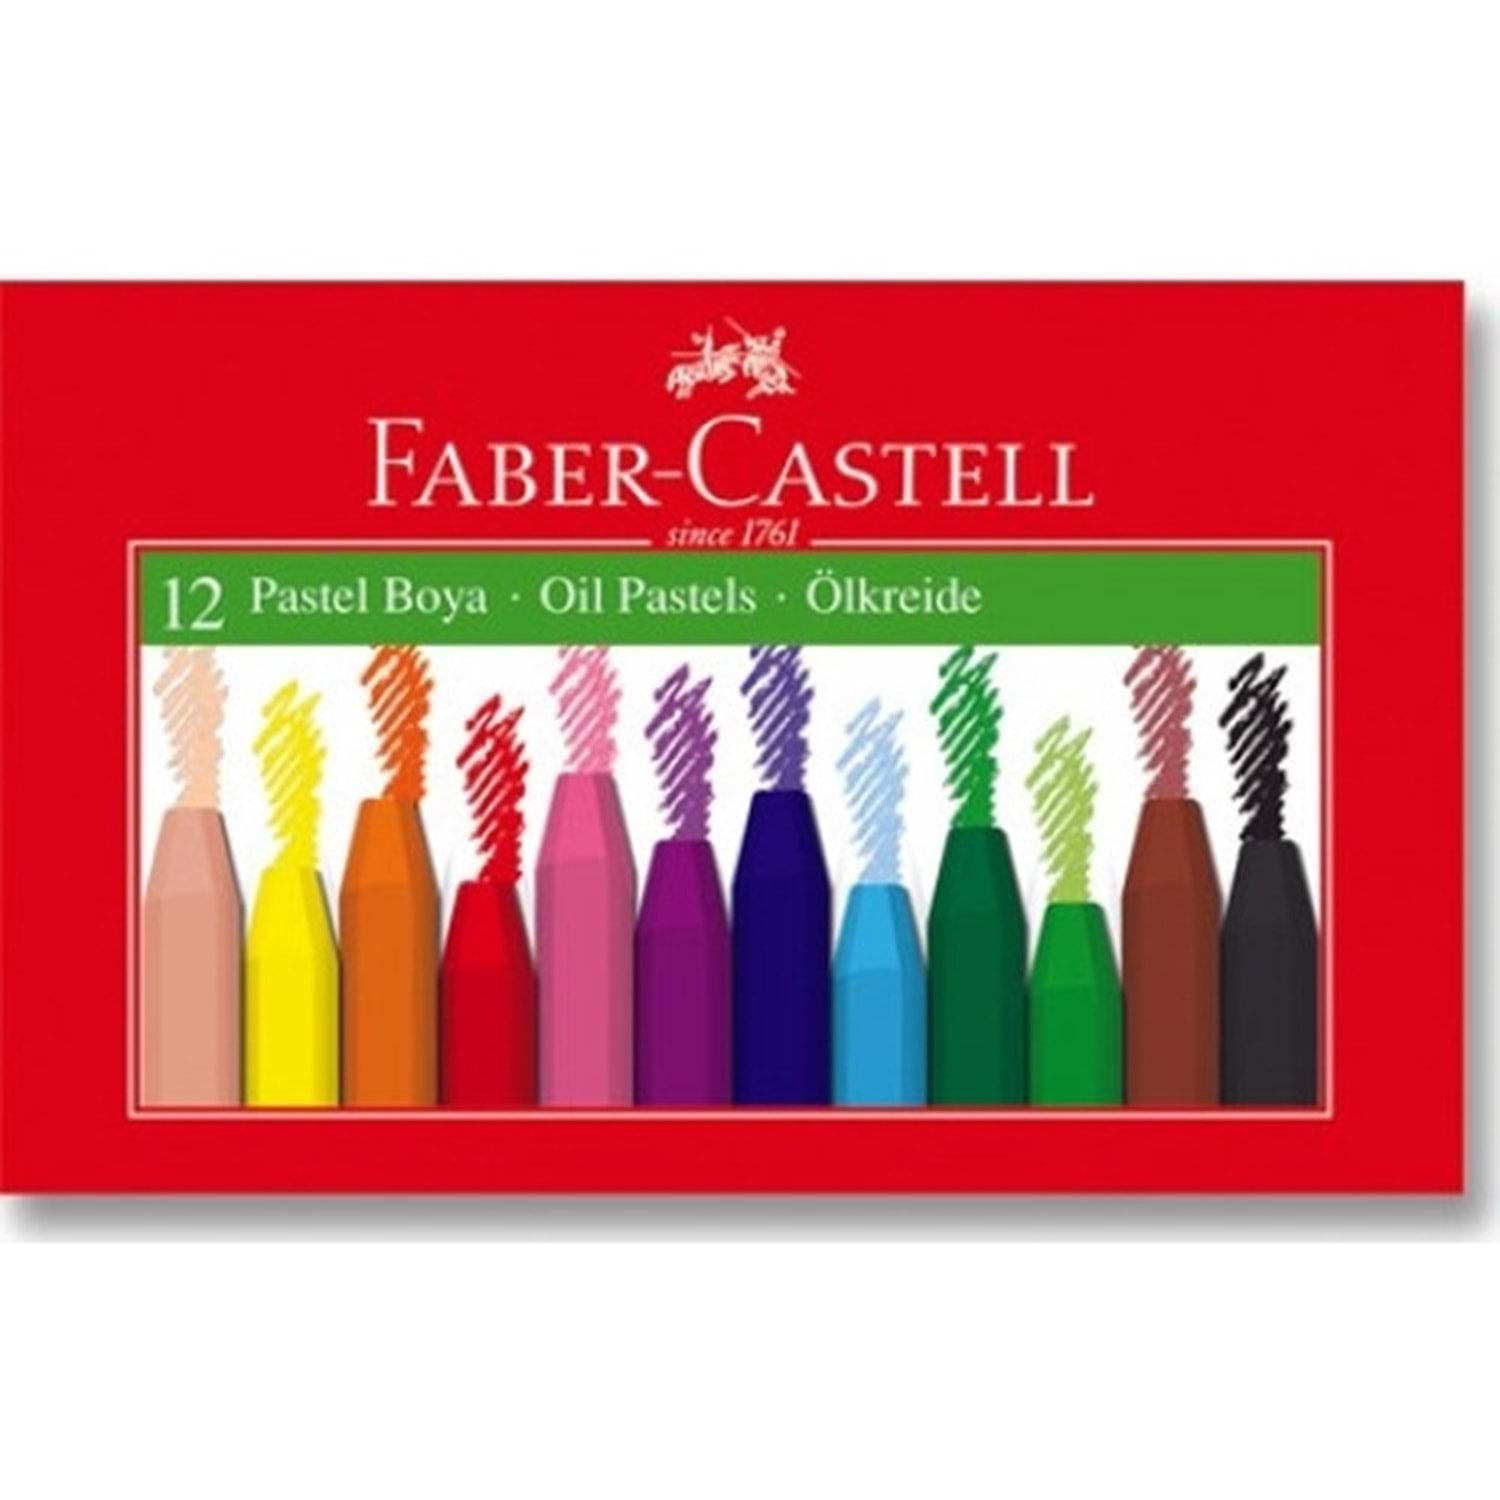 Faber Castell Oil Pastel Box Carton Multicolour 12 Colors